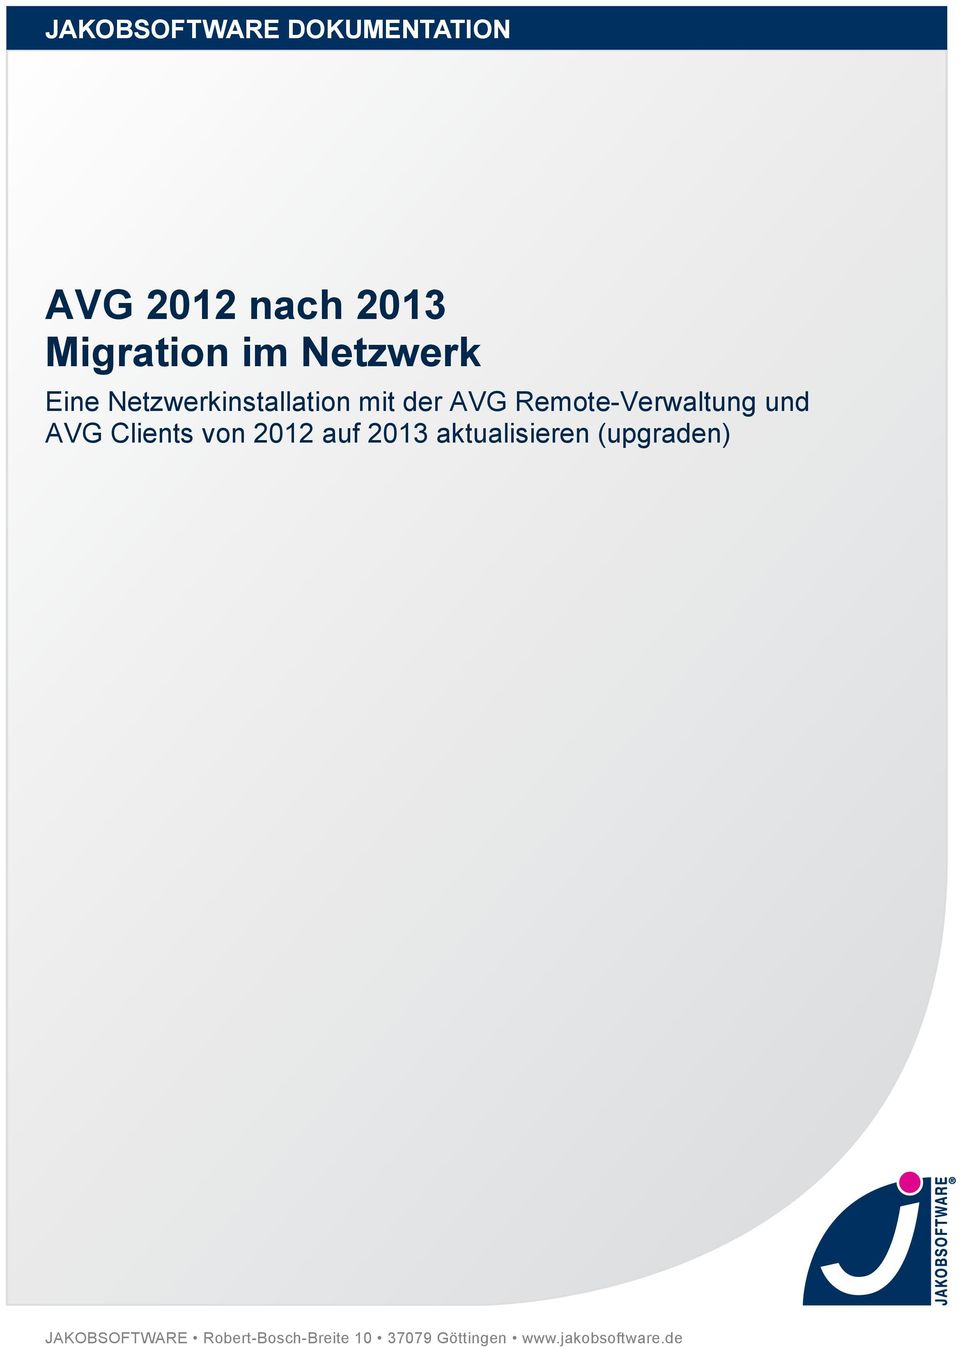 und AVG Clients von 2012 auf 2013 aktualisieren (upgraden)